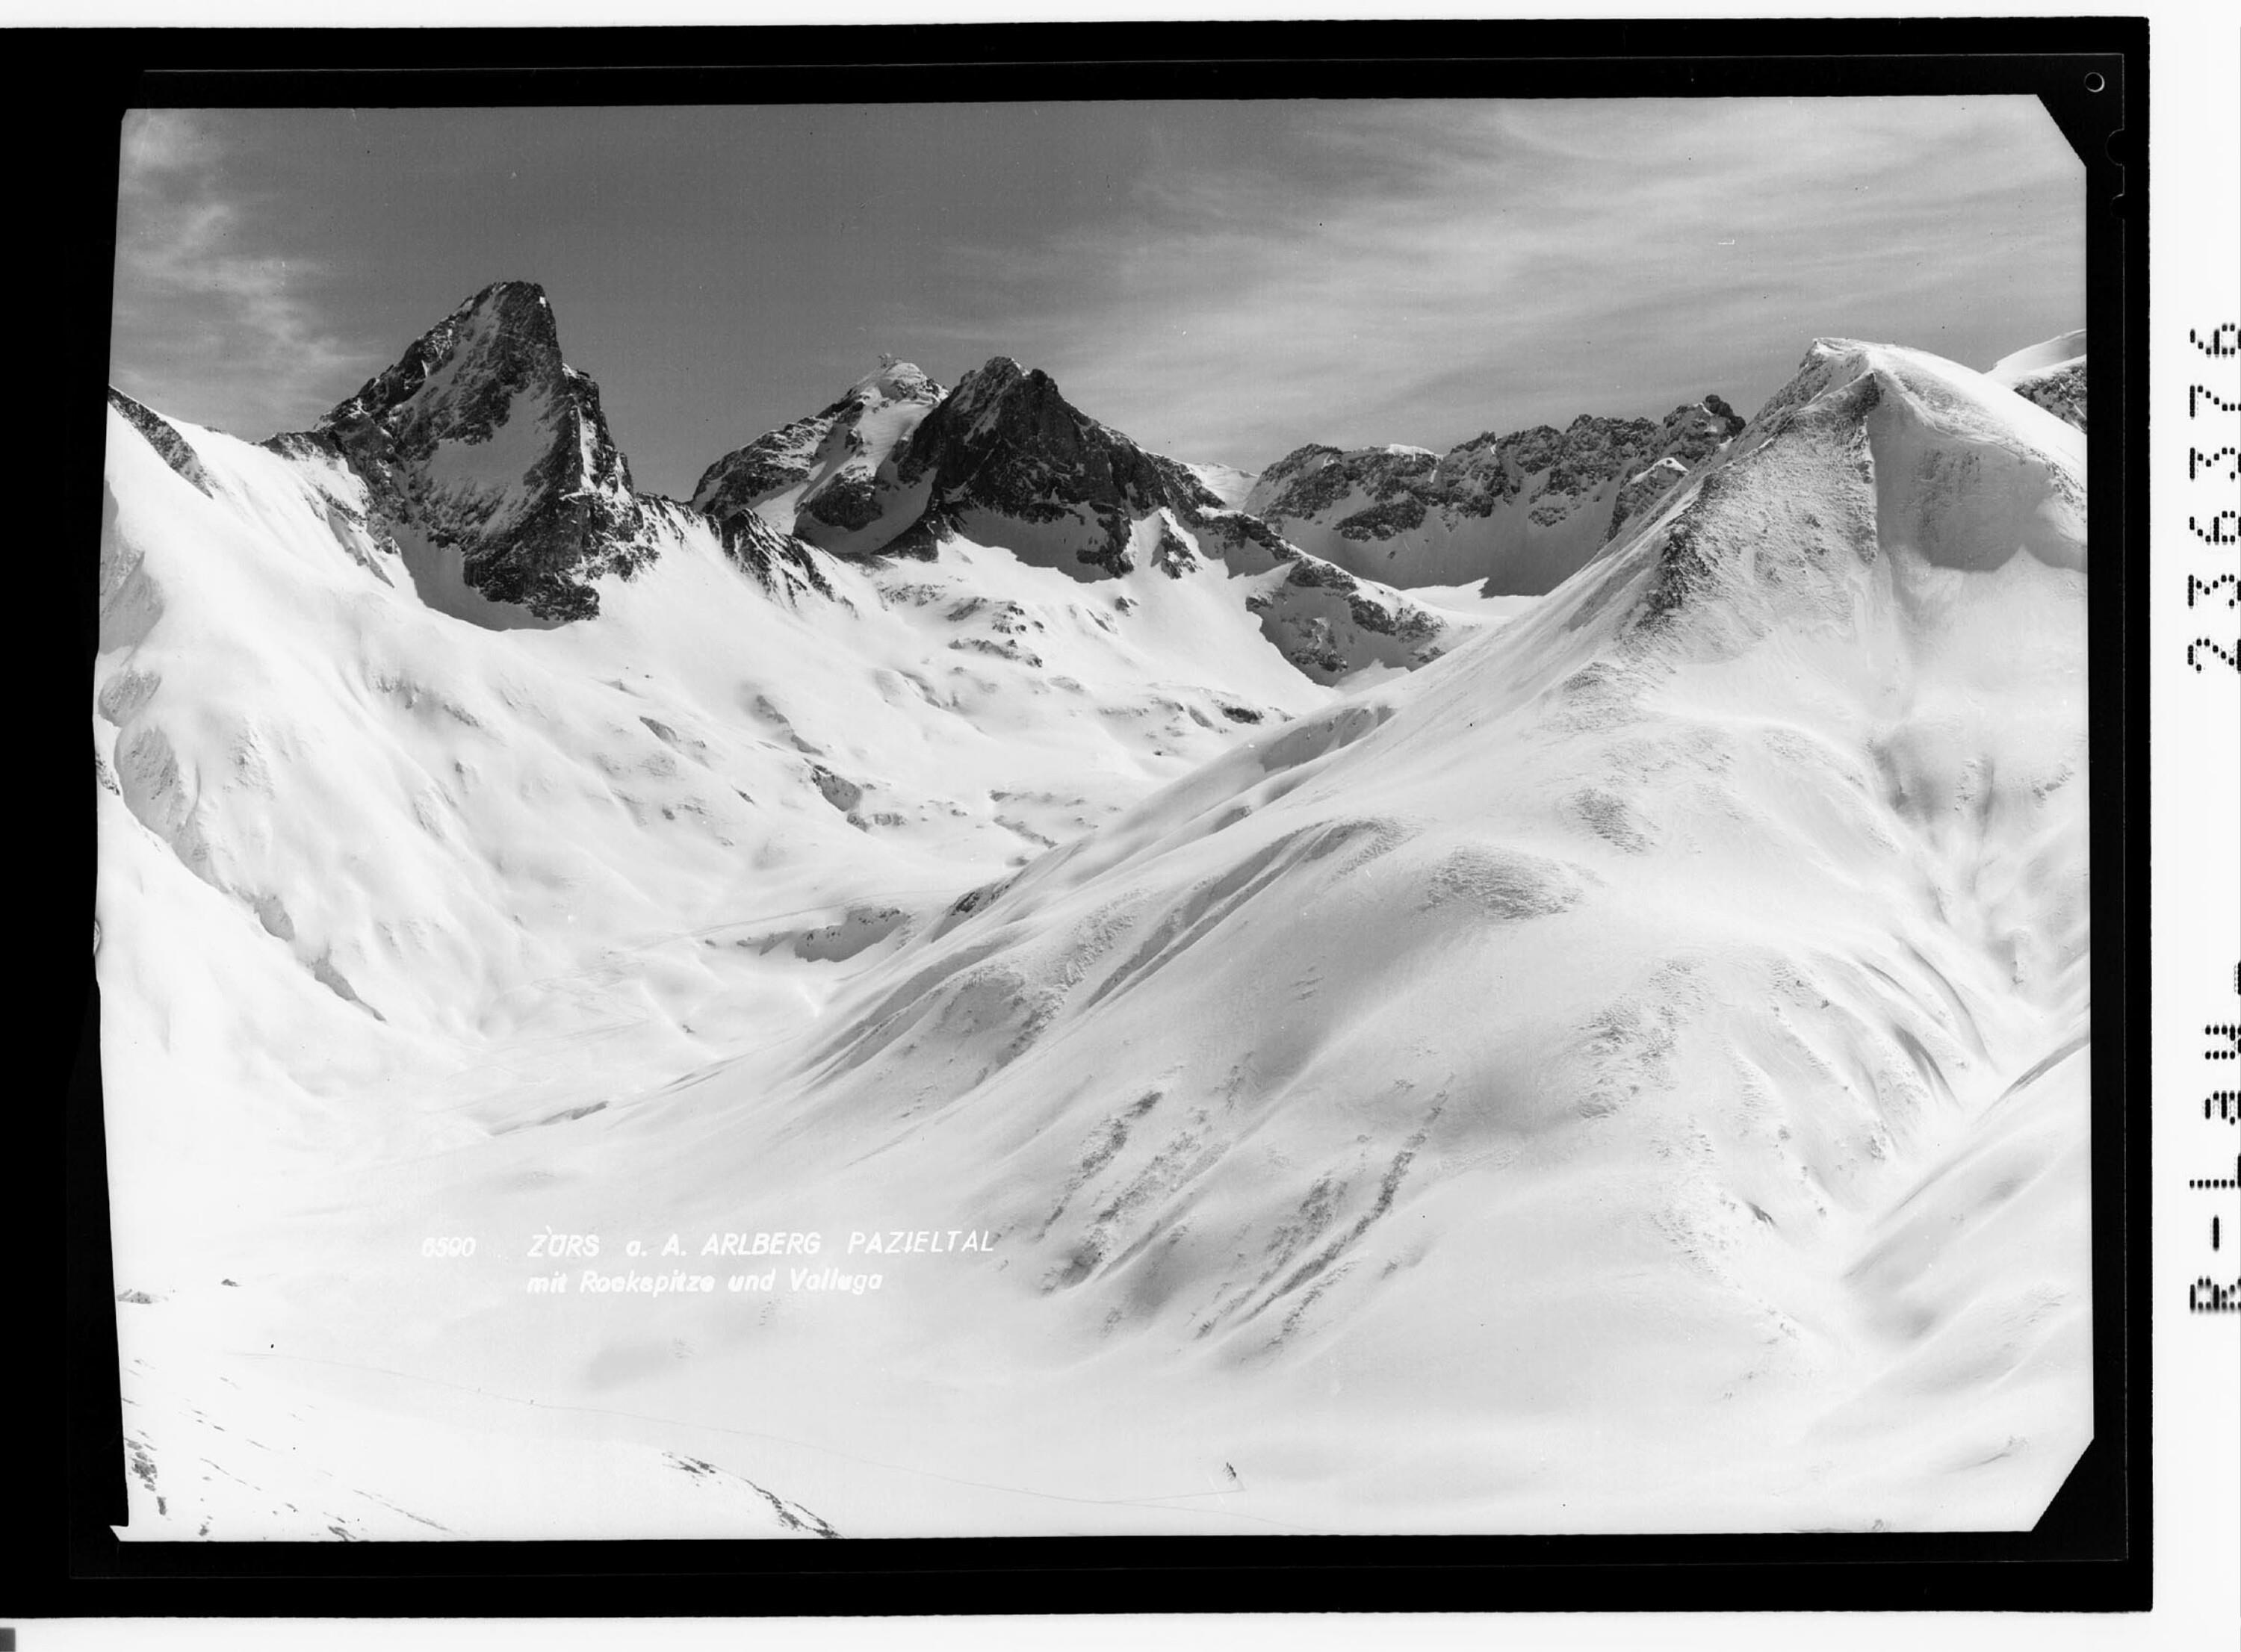 Zürs am Arlberg / Pazieltal mit Rockspitze und Valluga></div>


    <hr>
    <div class=